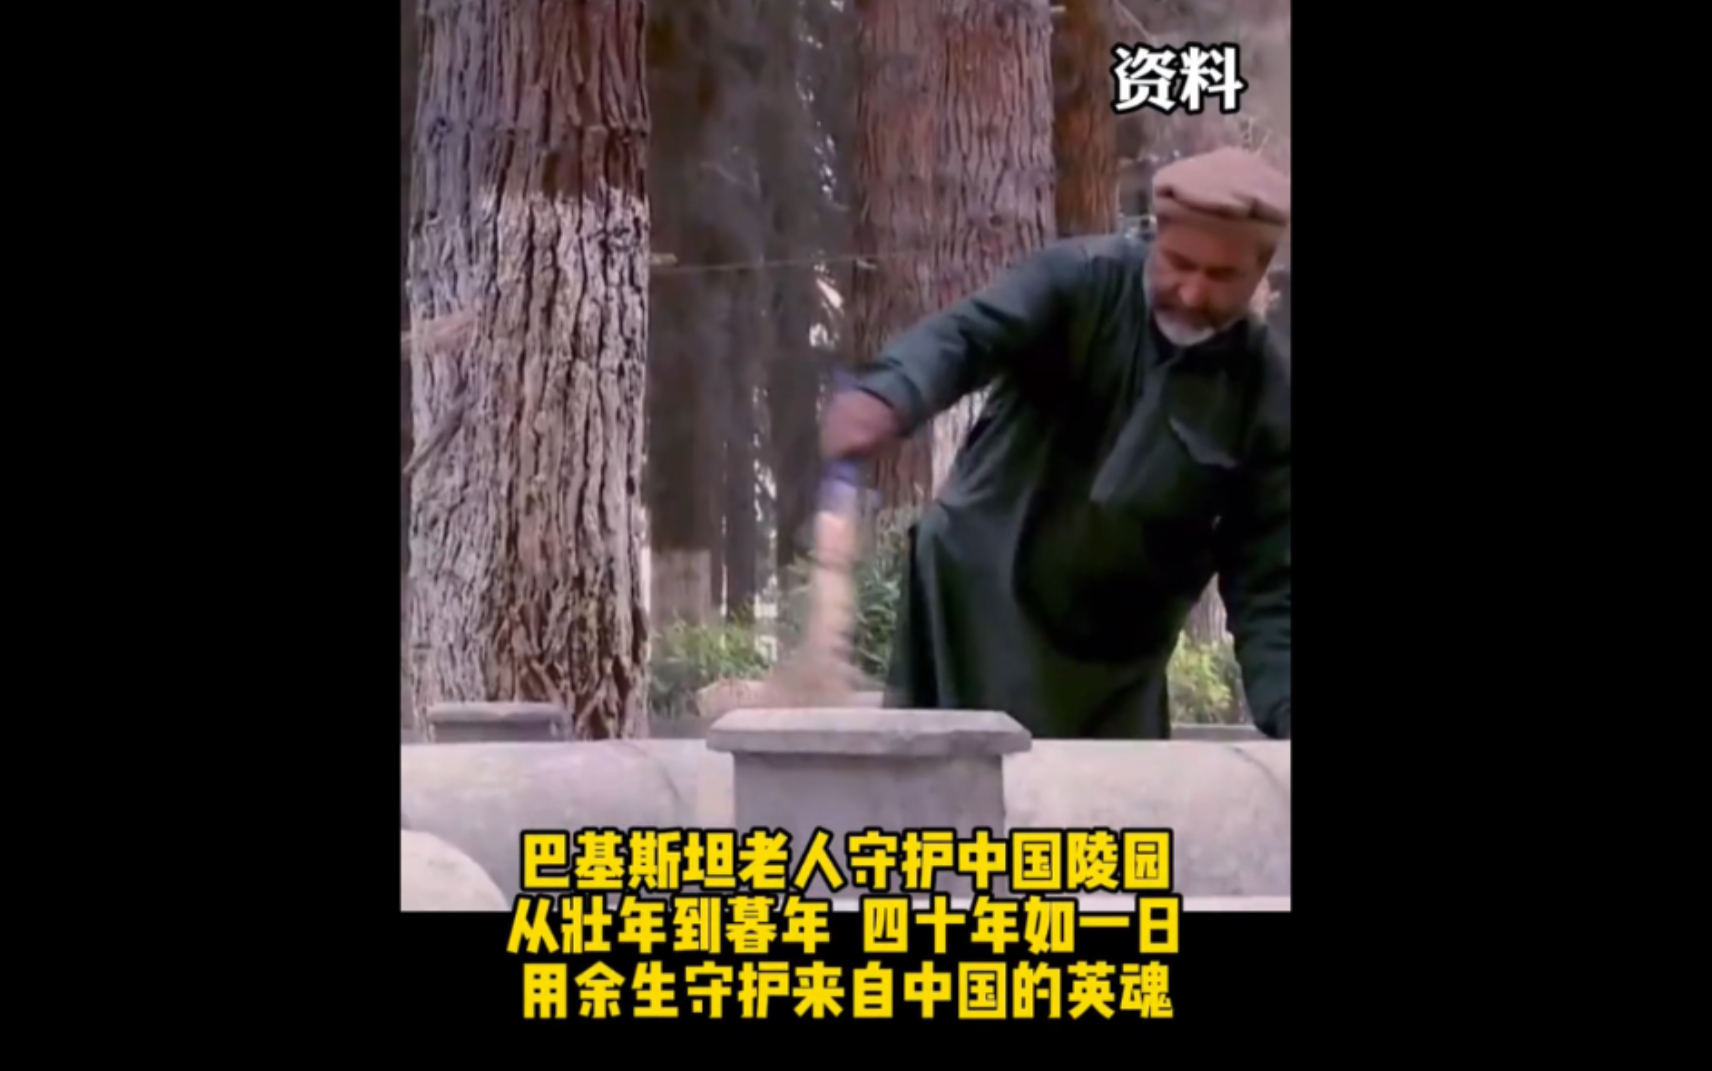 “我不是在守墓,而是在守护一群睡觉的中国孩子。”